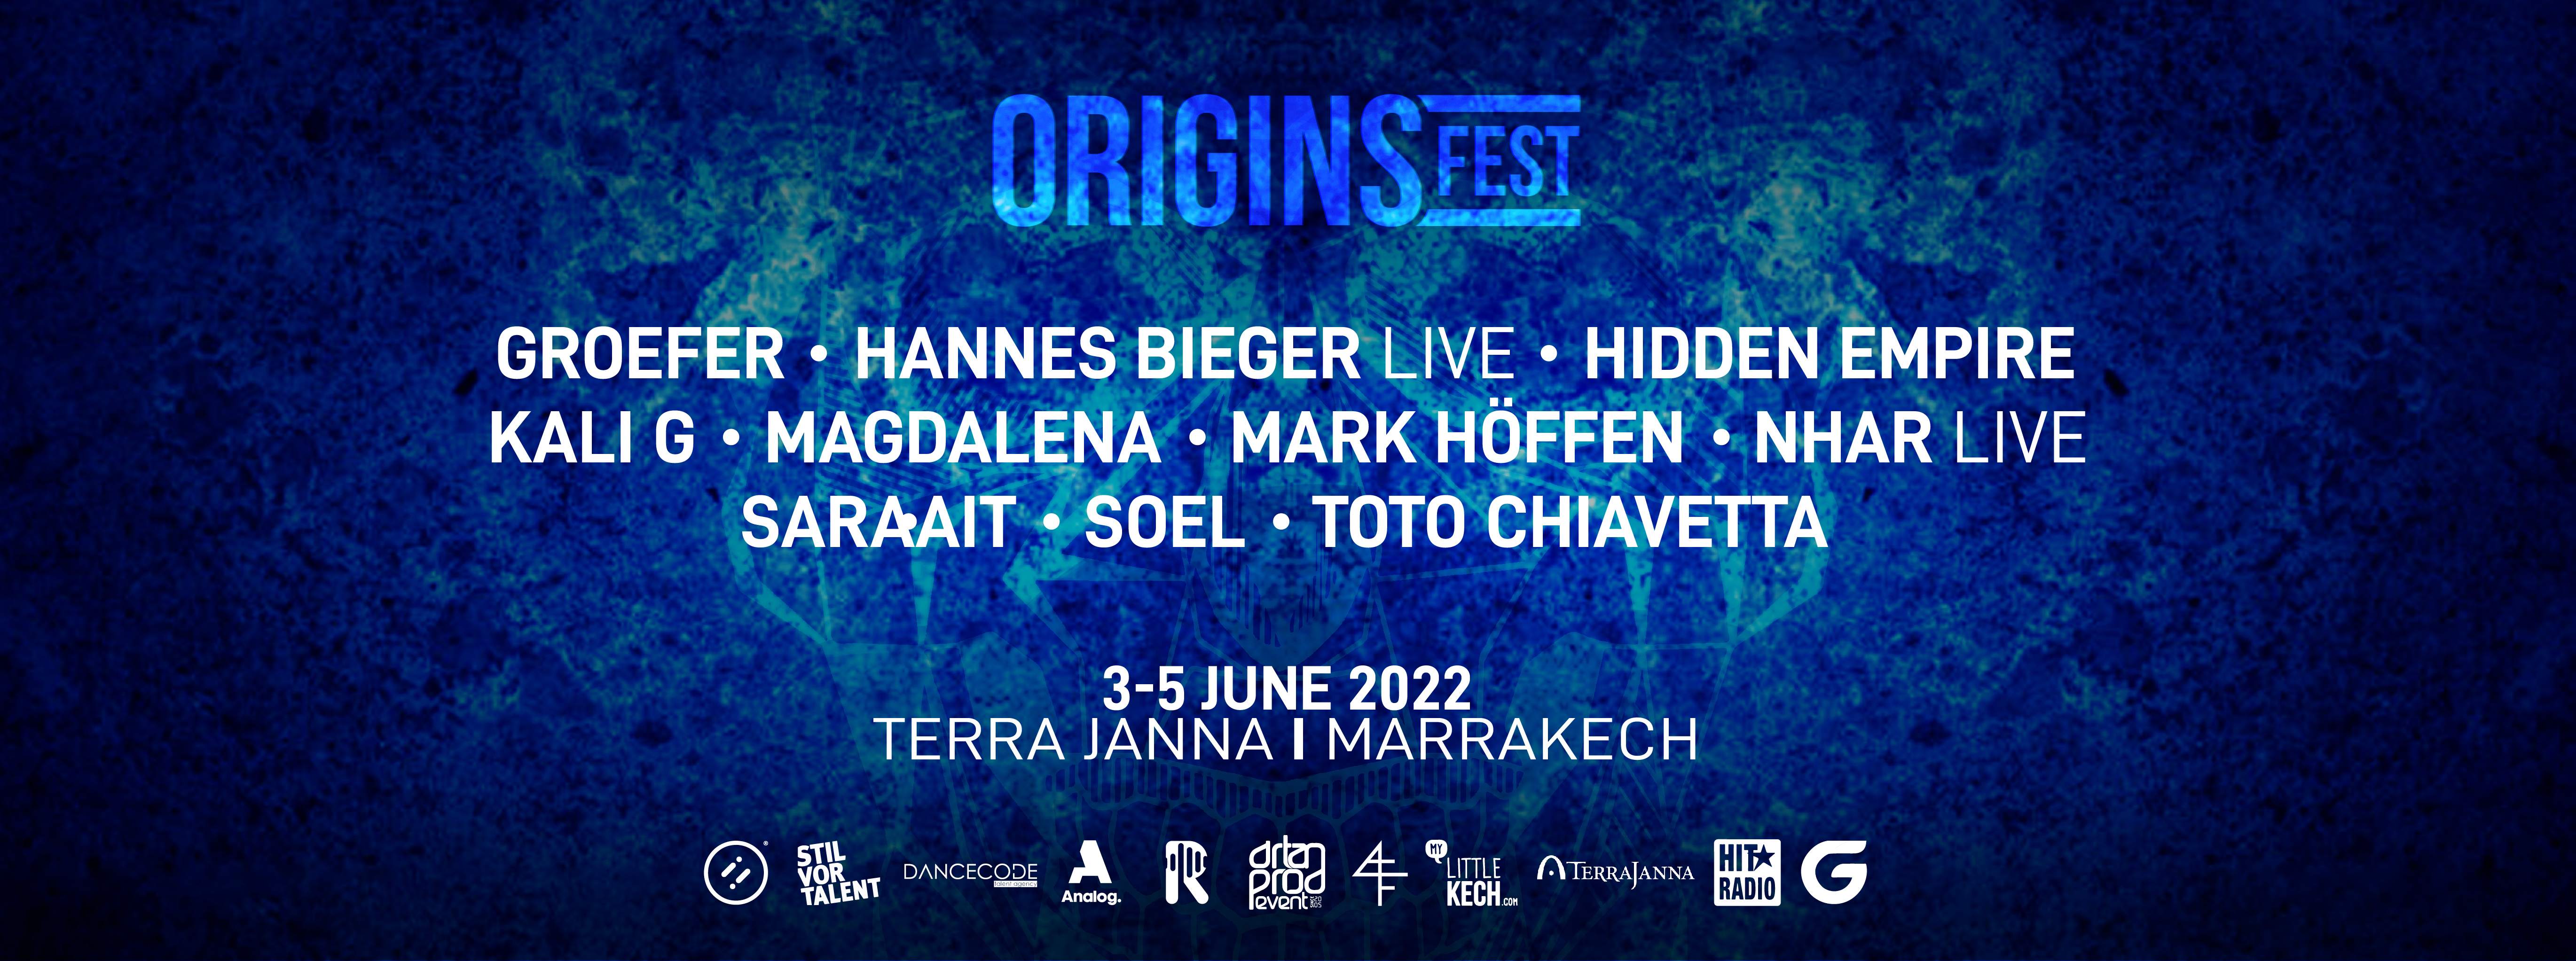 Origins Festival 2022 - フライヤー表